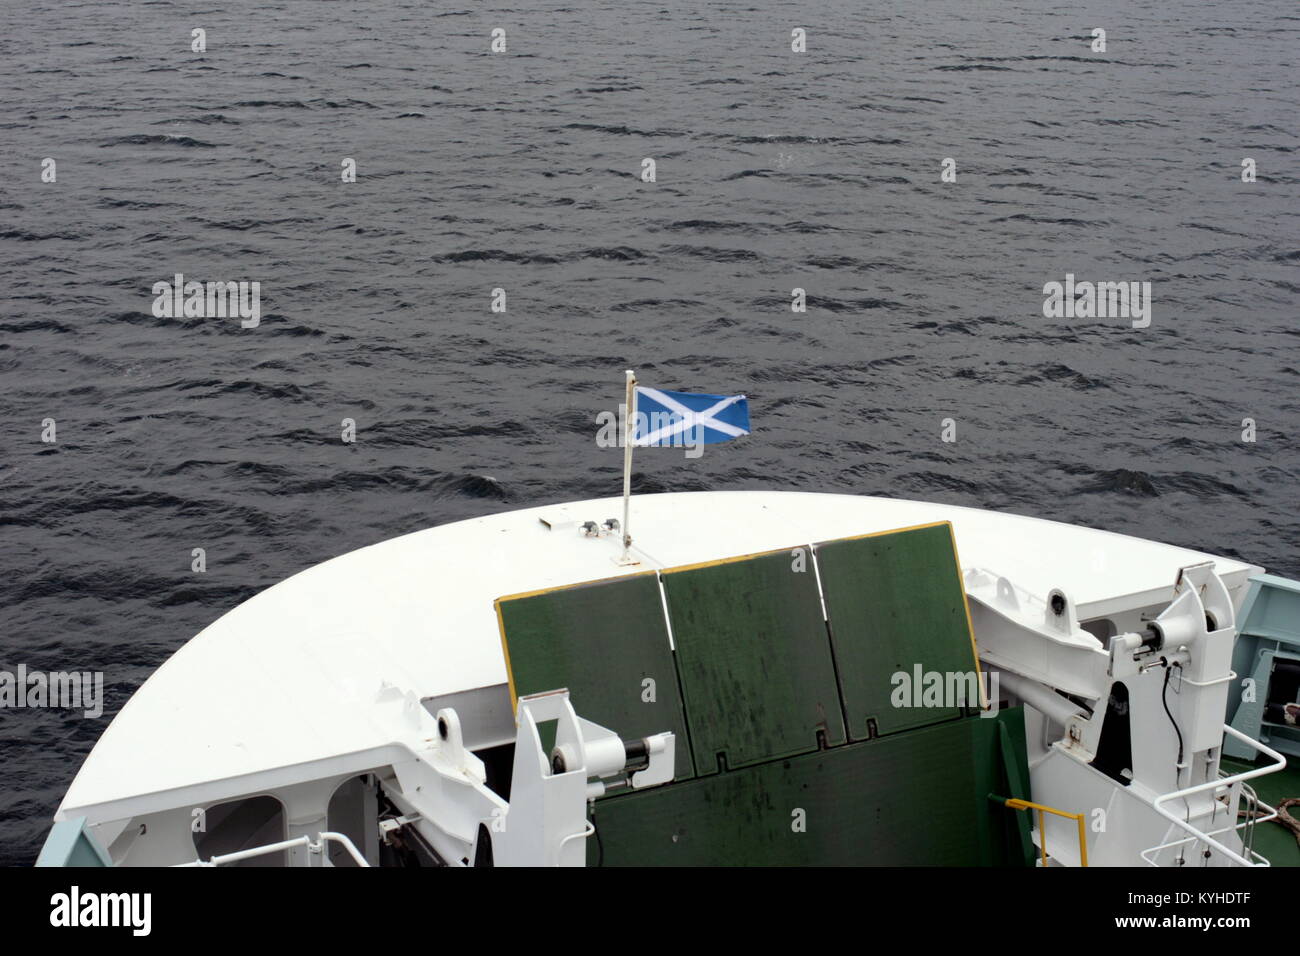 Bow avant de Gourock Caledonian MacBrayne Argyle ferry avec le drapeau écossais satire flottant au vent Rothesay, Royaume-Uni Banque D'Images